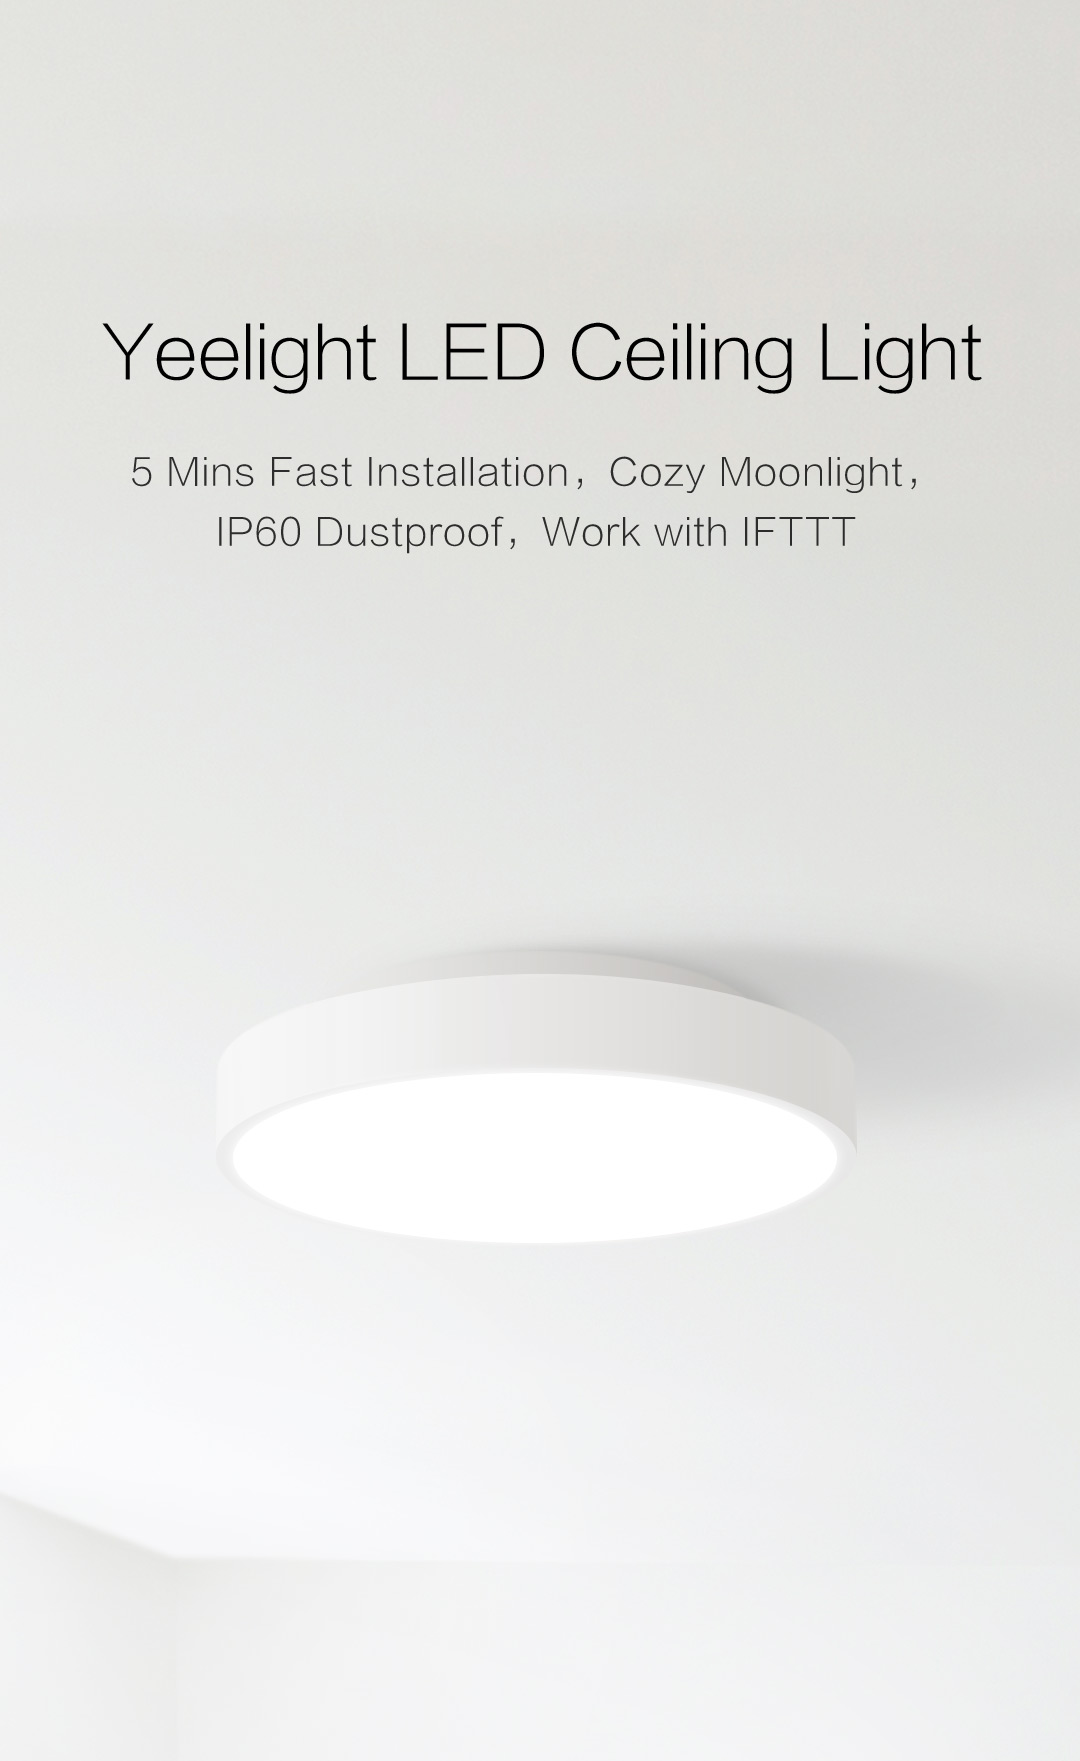 yeelight ylxd01yl smart led ceiling light